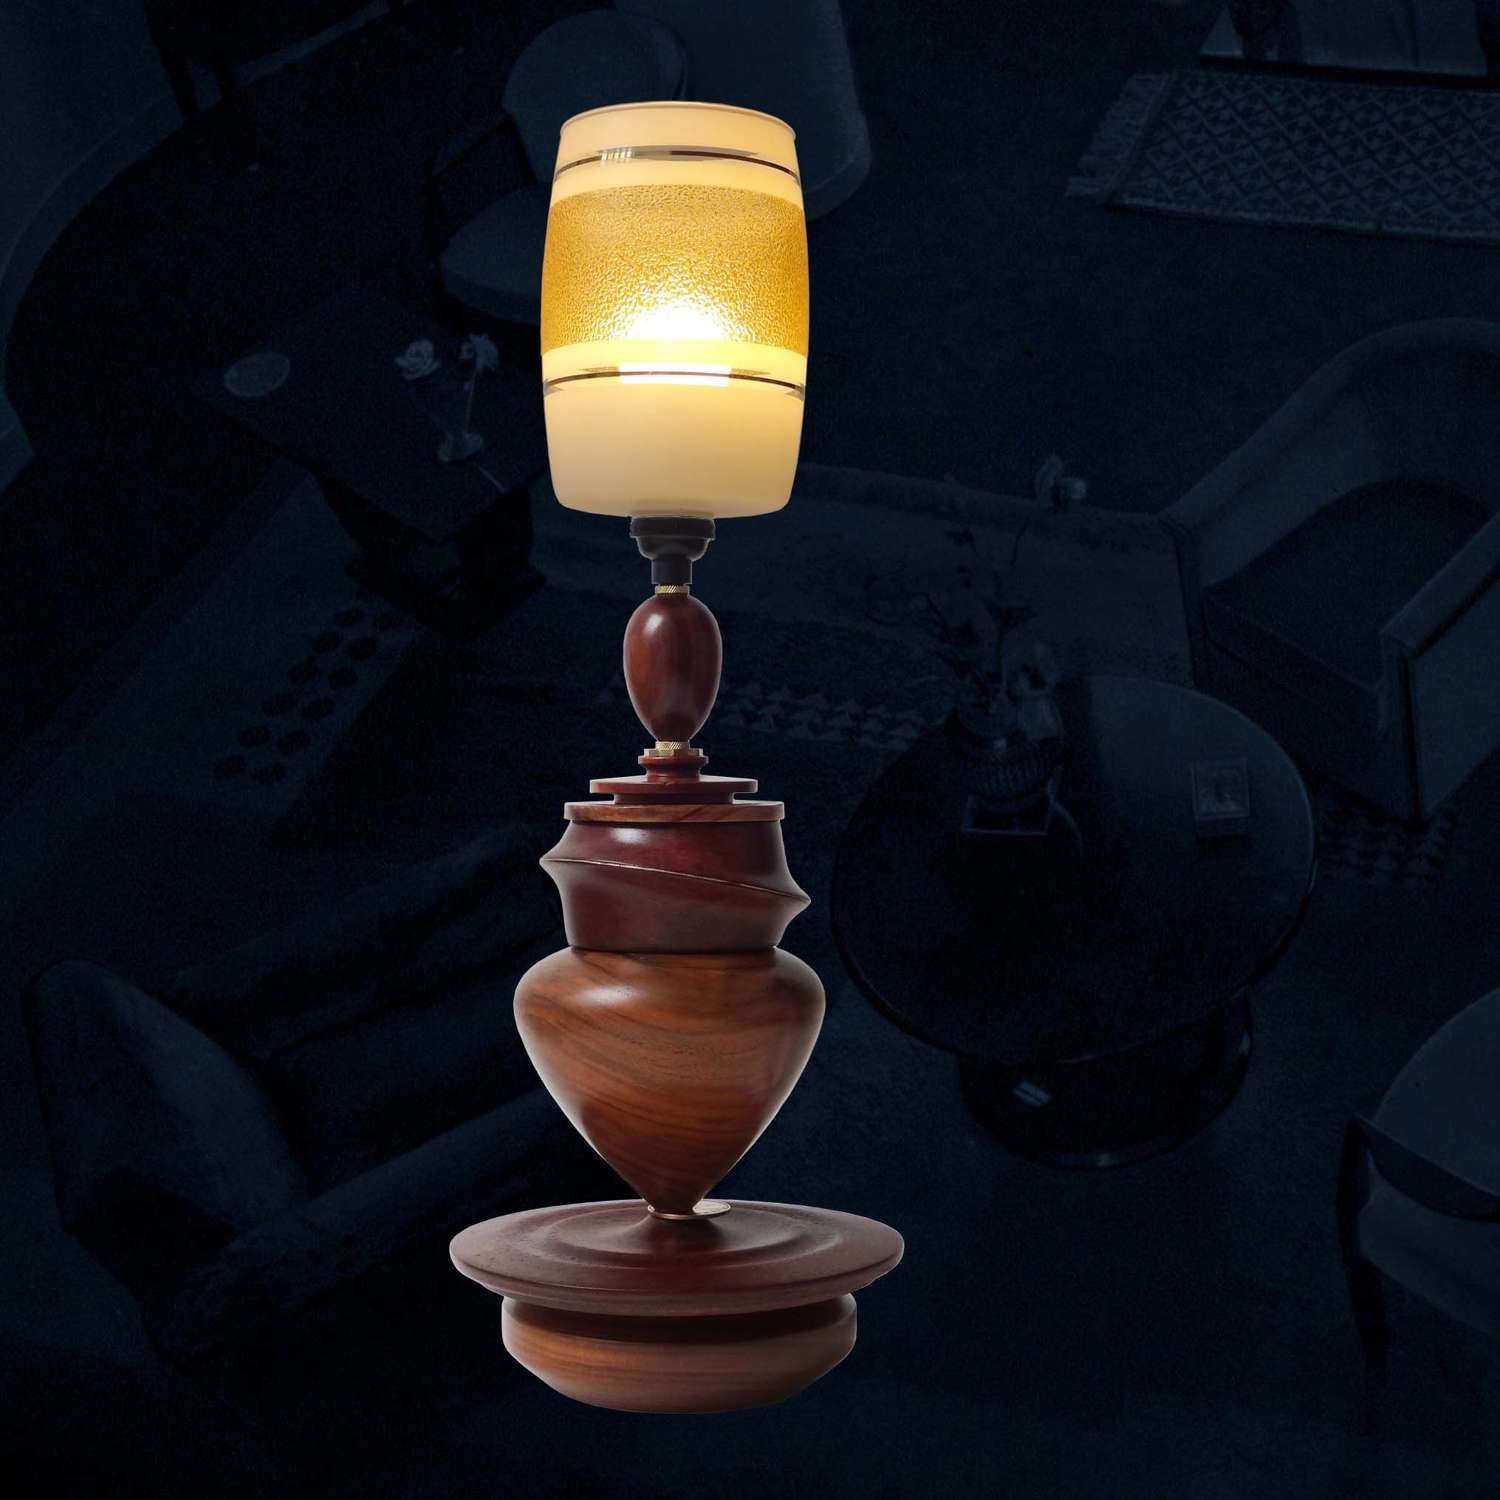 Unique lamp design - Bon Voyage - by Gilles Bourlet Dartmouth